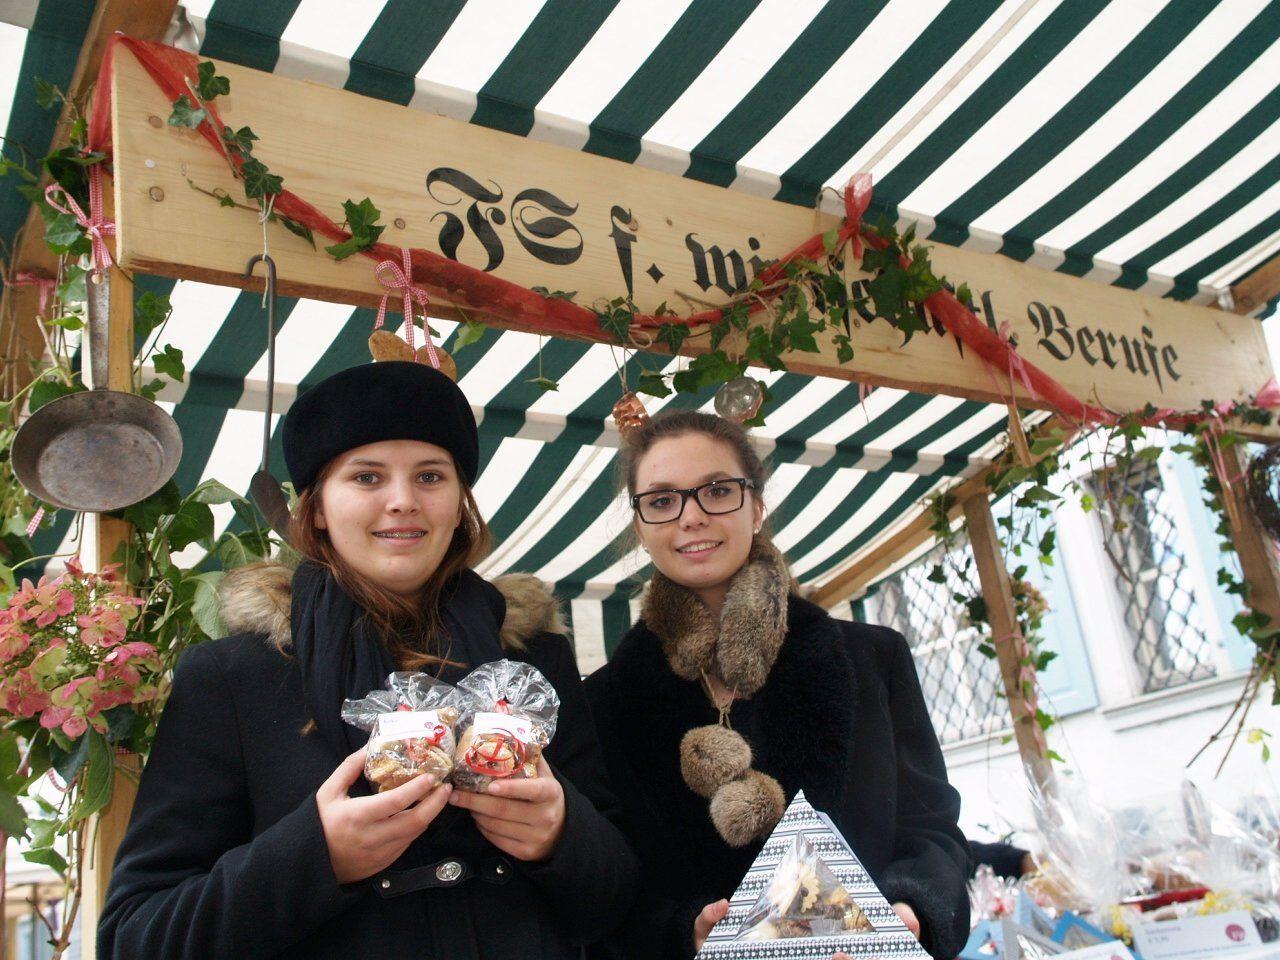 Stefanie und Joanna betreuten den Stand der Fachschule für wirtschaftliche Berufe am Dornbirner Martinimarkt